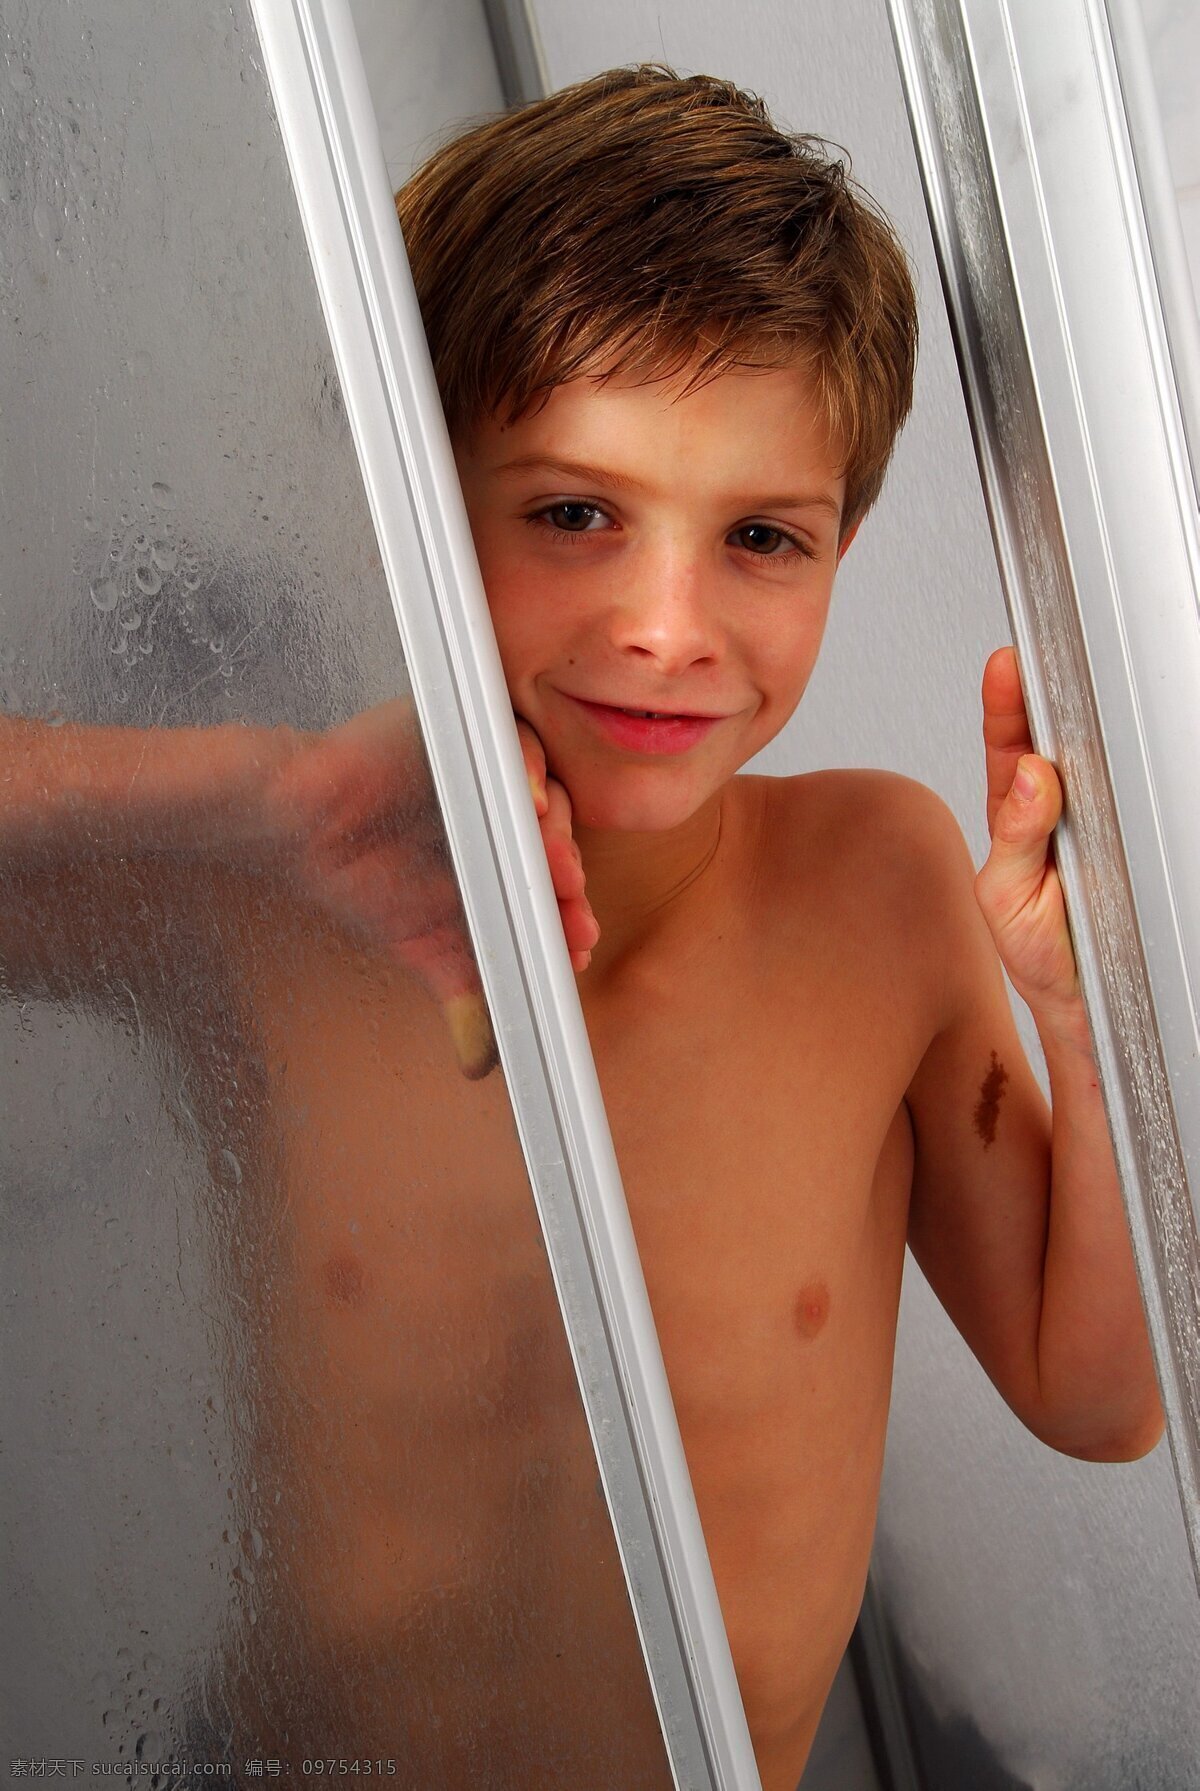 淋浴 间 外 看 男孩 洗澡 小男孩 欧美男孩 浴室 卫生间 微笑 可爱 孩子 少年儿童 卫生 帅气 模特 小模特 洗漱 儿童幼儿 人物图库